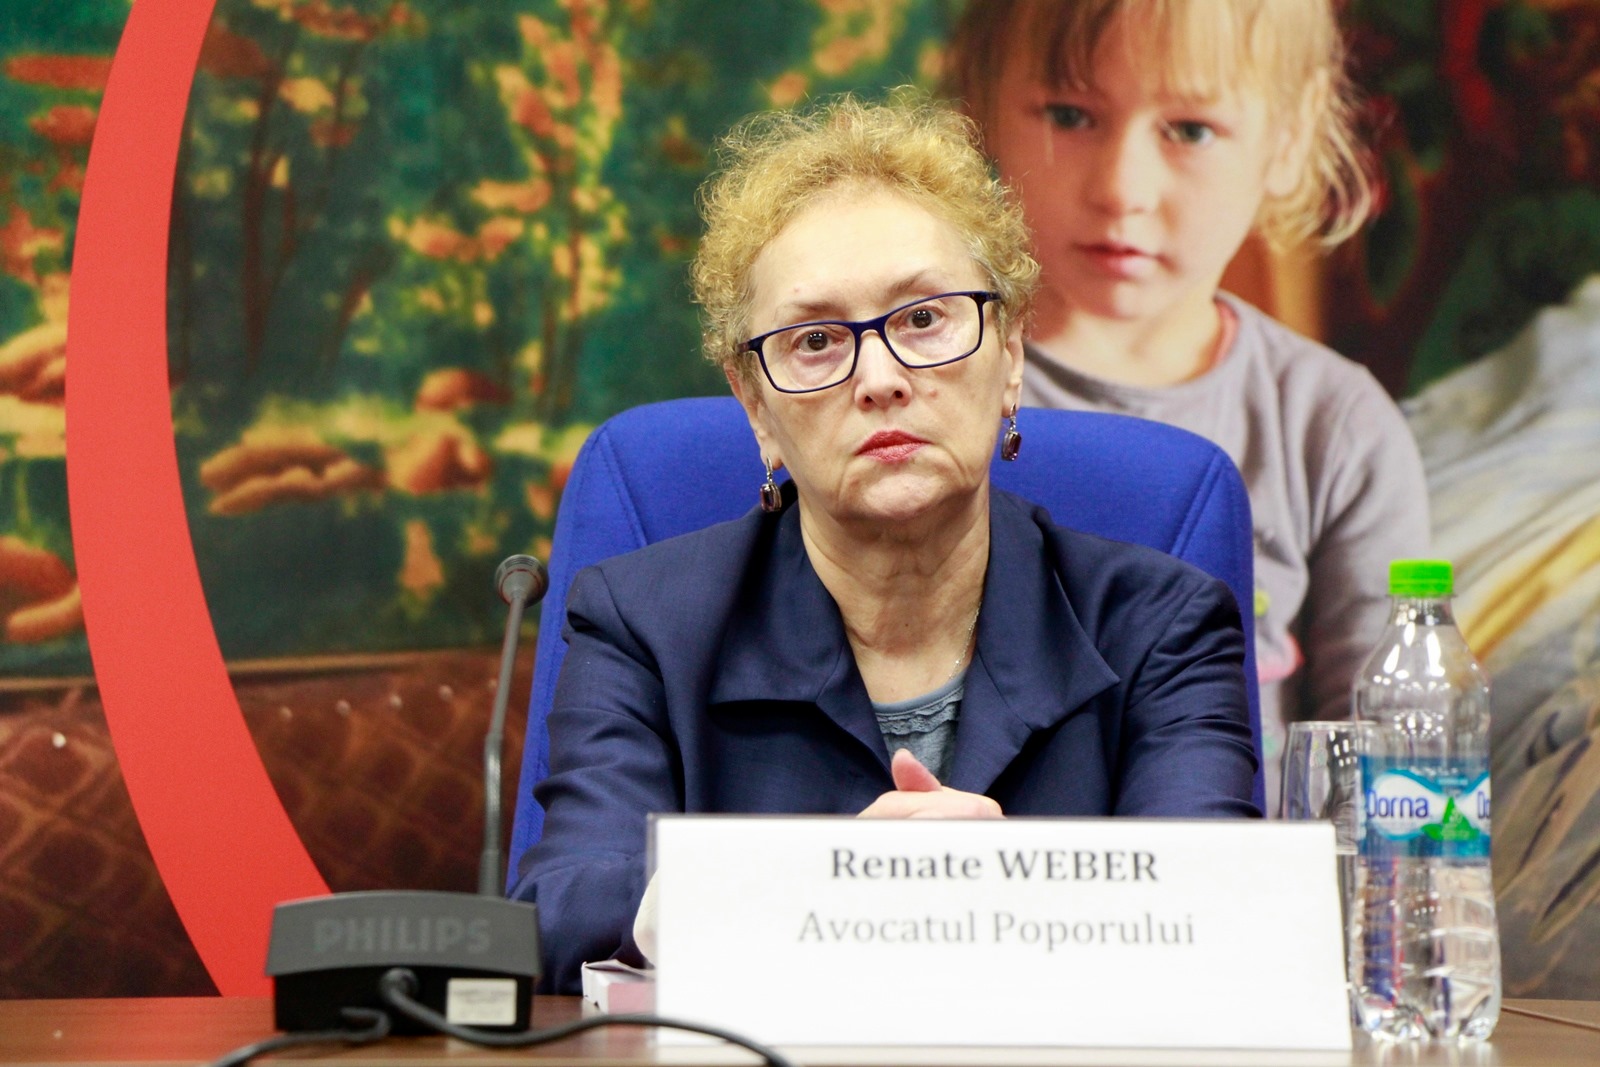 RAPORT PRIVIND RESPECTAREA DREPTURILOR COPILULUI ÎN ROMÂNIA (2019) – Salvați Copiii/Avocatul Poporului